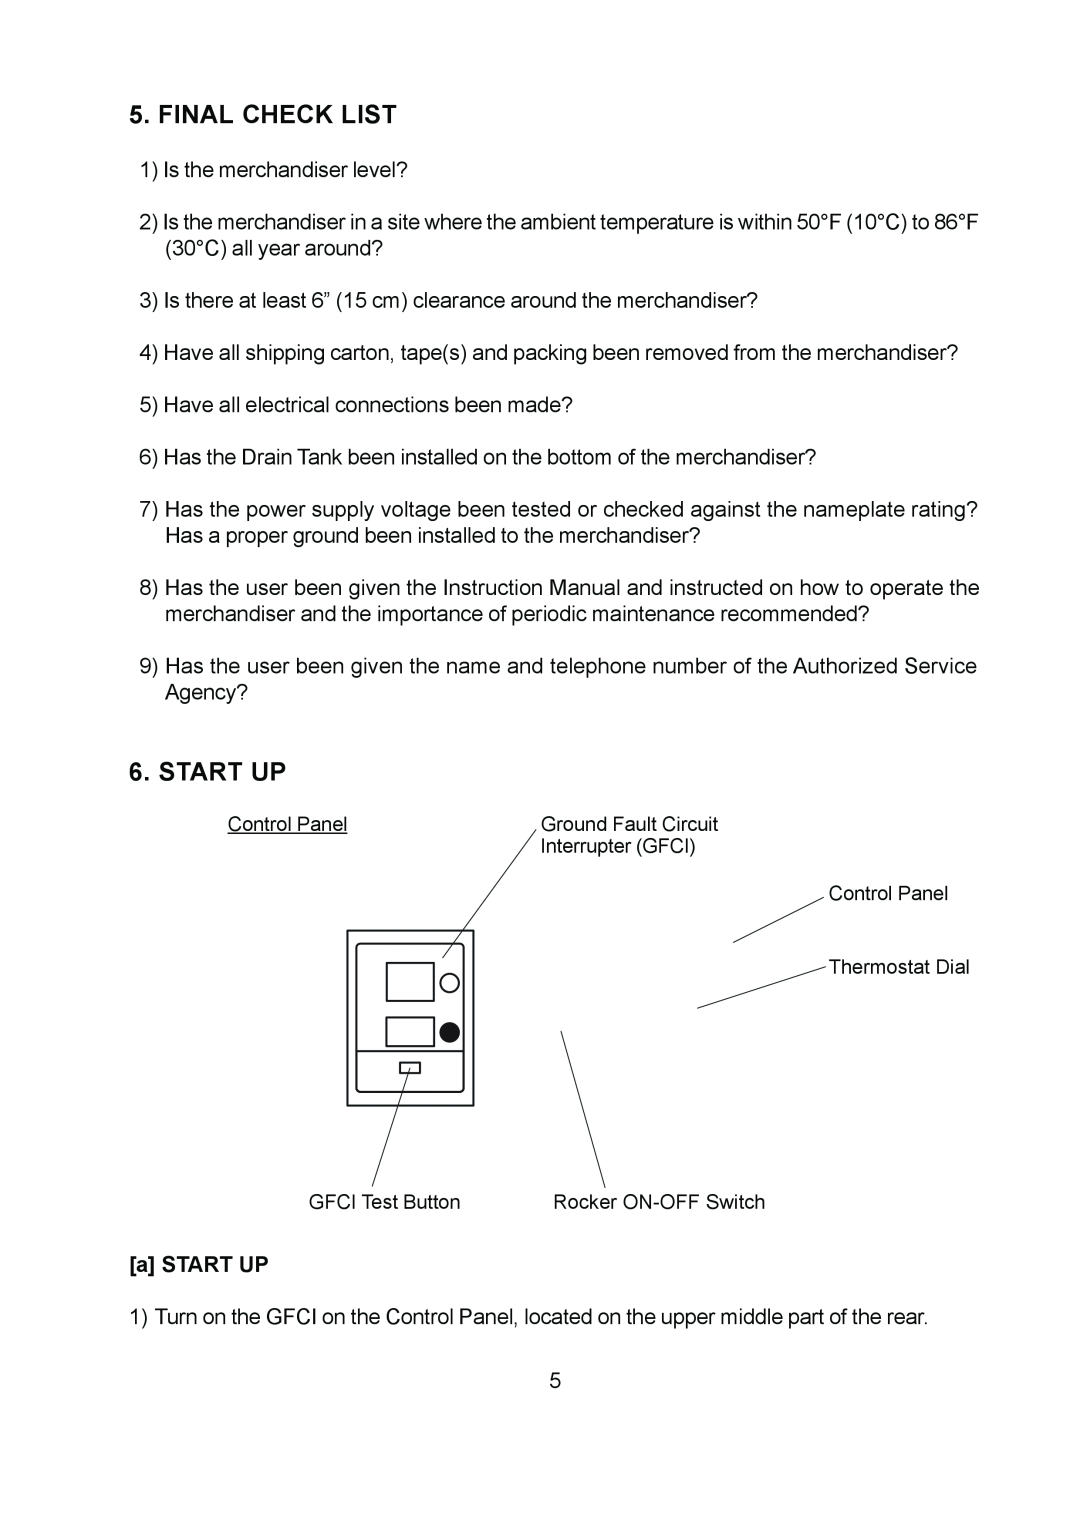 Hoshizaki KD-90D instruction manual Final Check List, Start Up, a START UP 